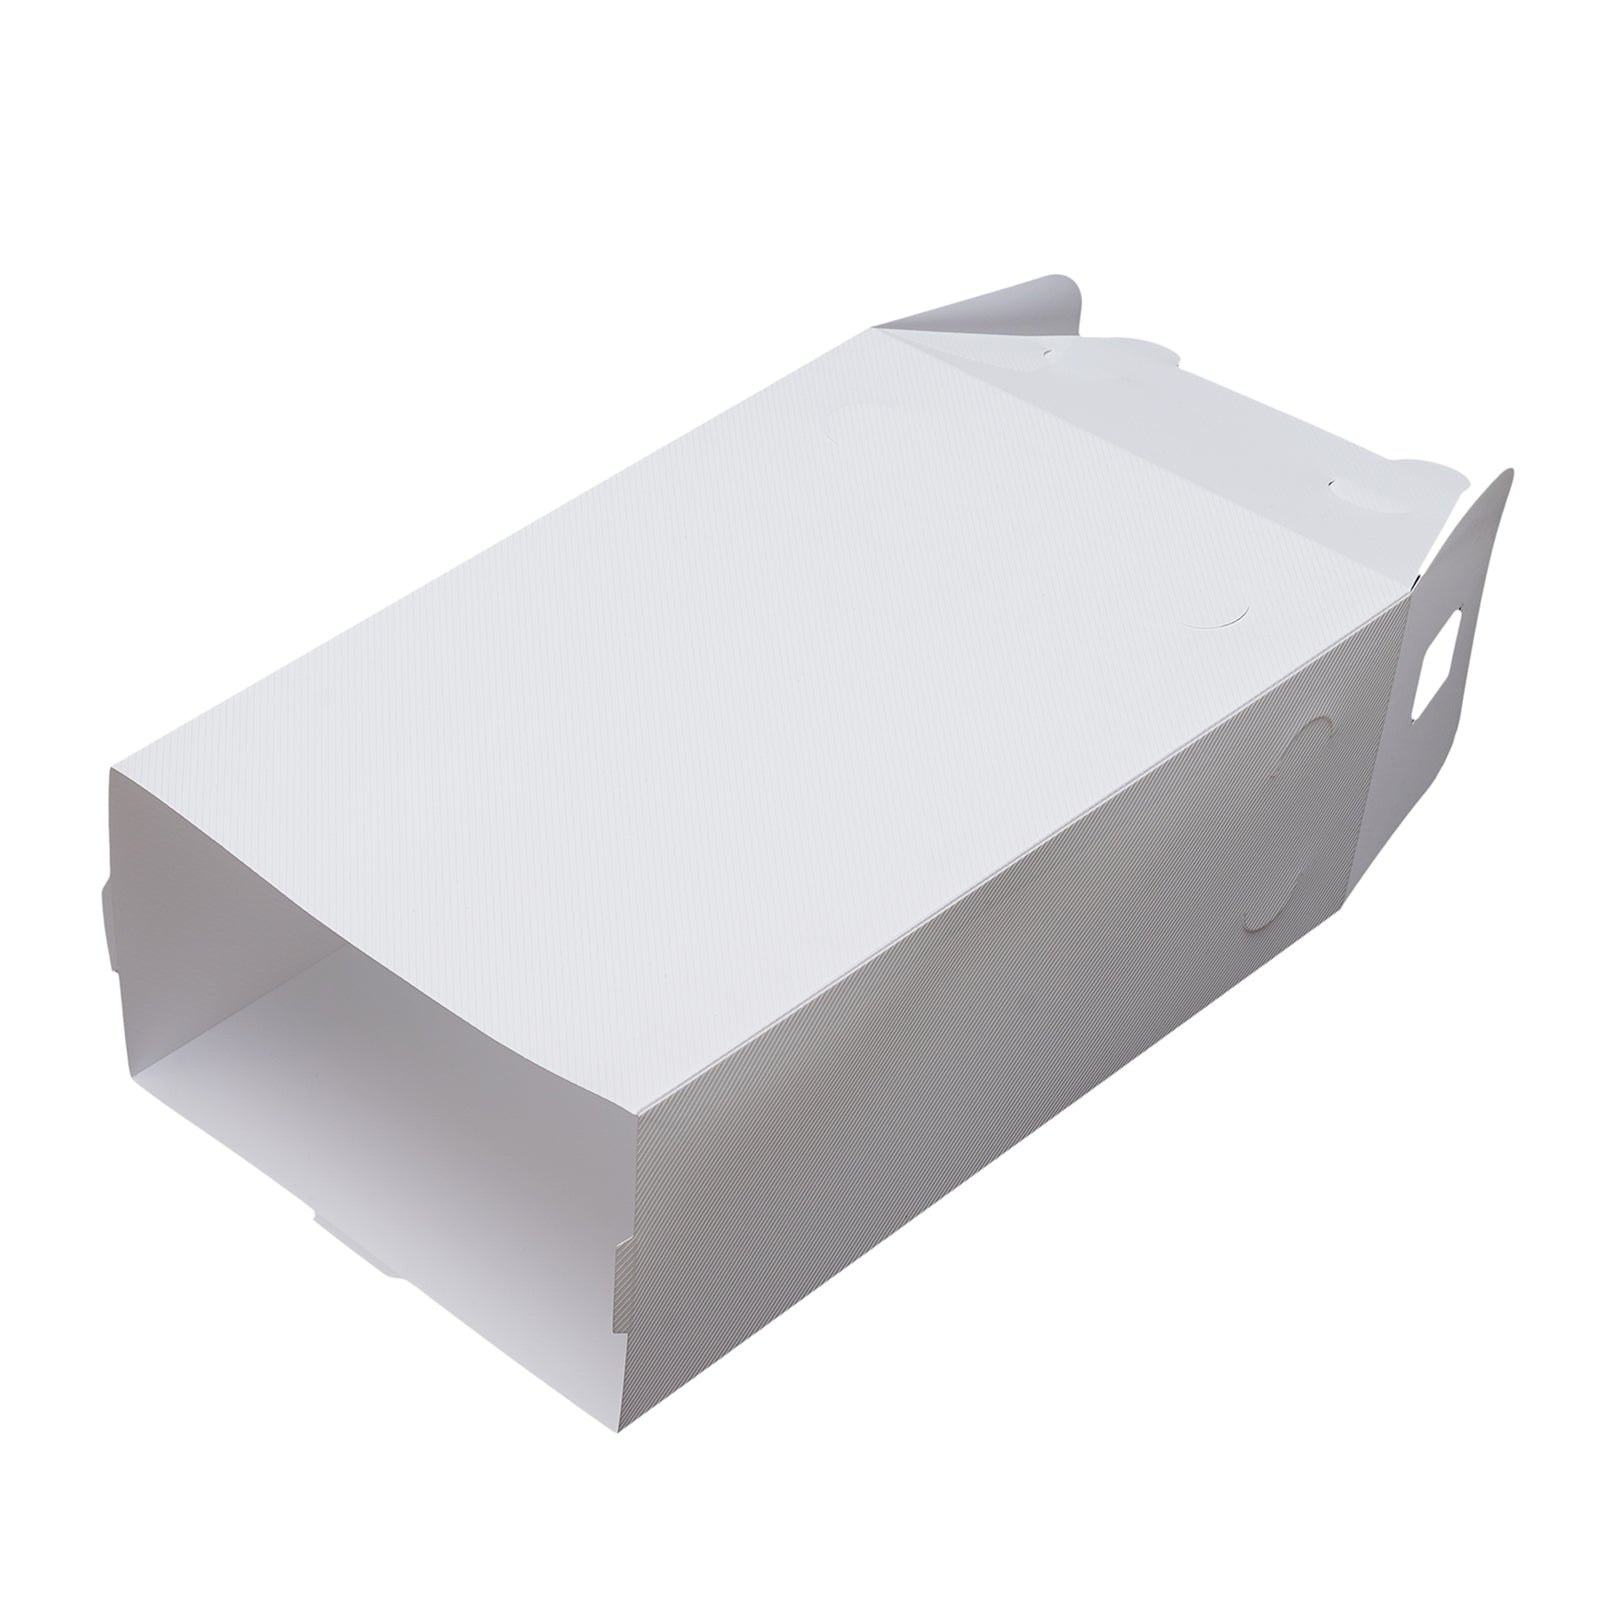 CNCEST 20er Set Schuhkarton Schuhboxen Kunststoff Transparent Schuhbox Aufbewahrung Stapelbox + Deckel